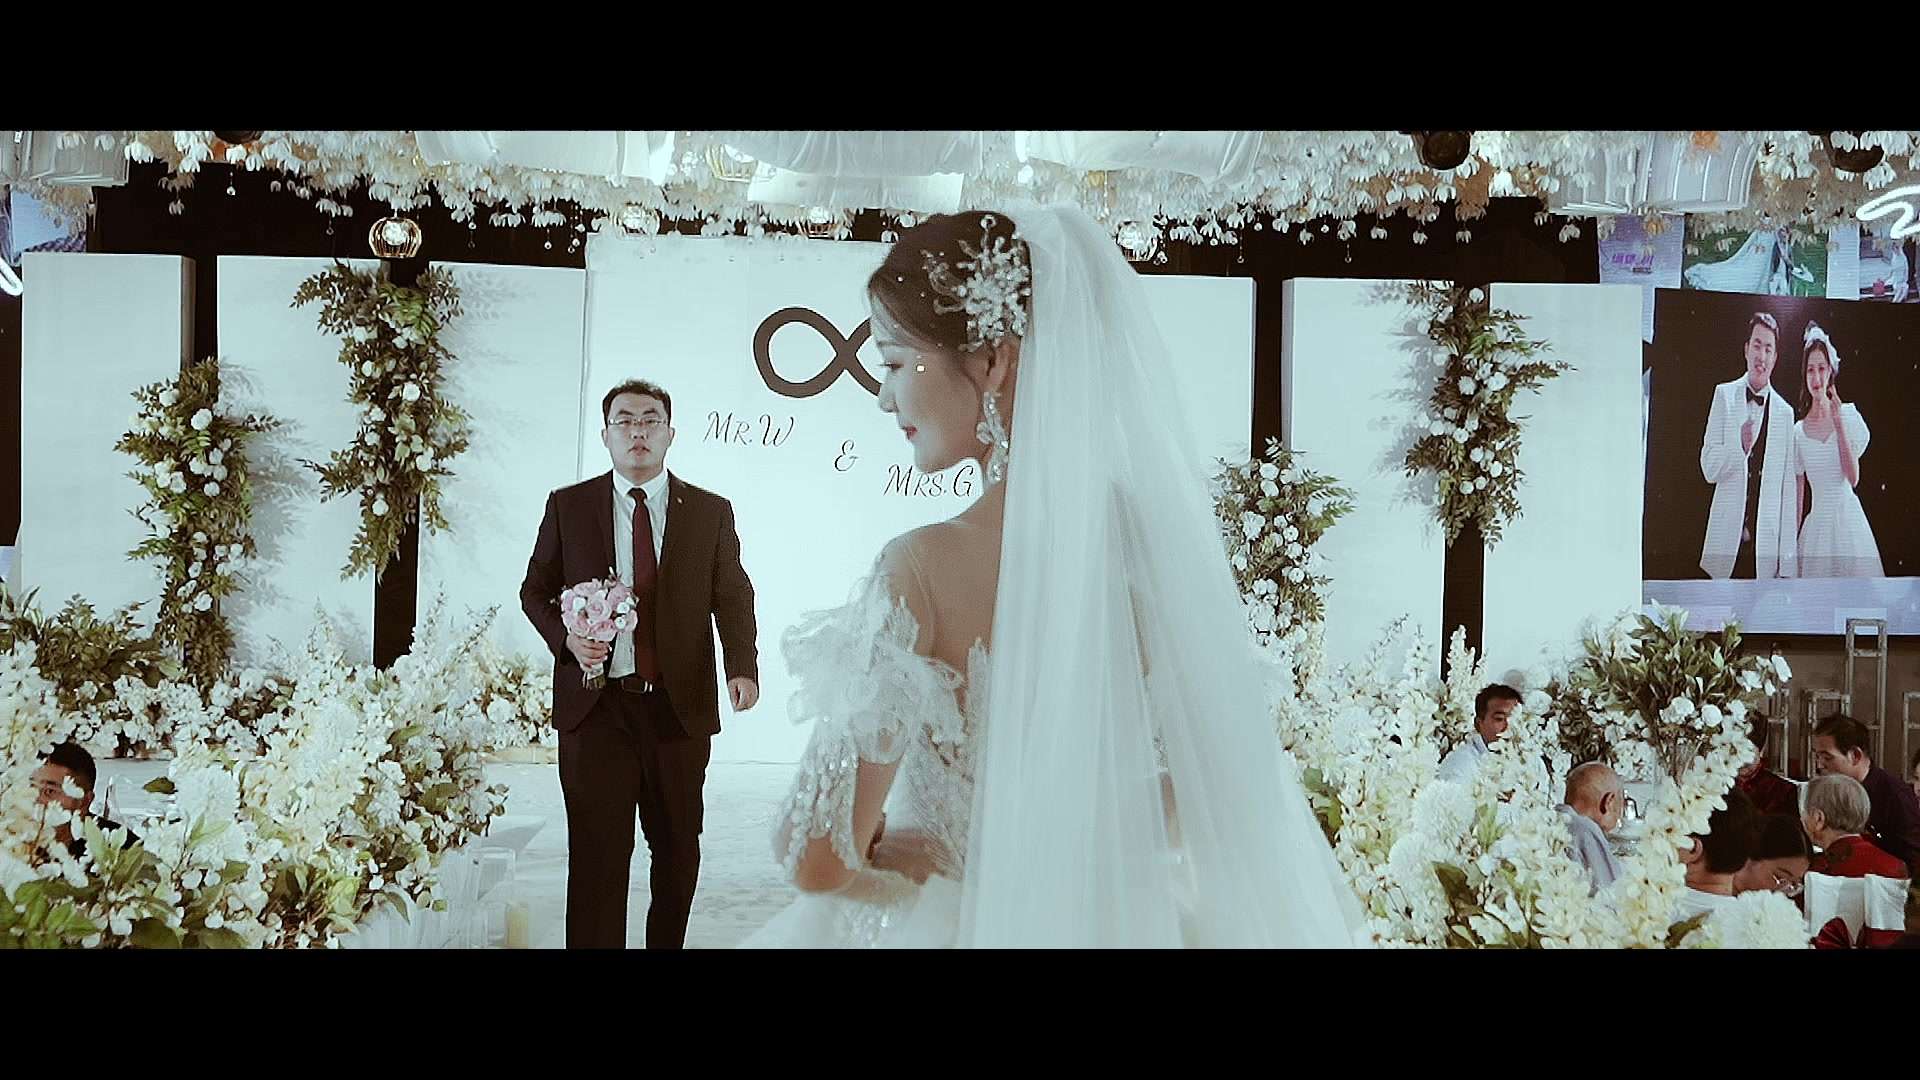 章丘婚礼 婚礼中最感动瞬间 新娘交接【山羊映像】出品